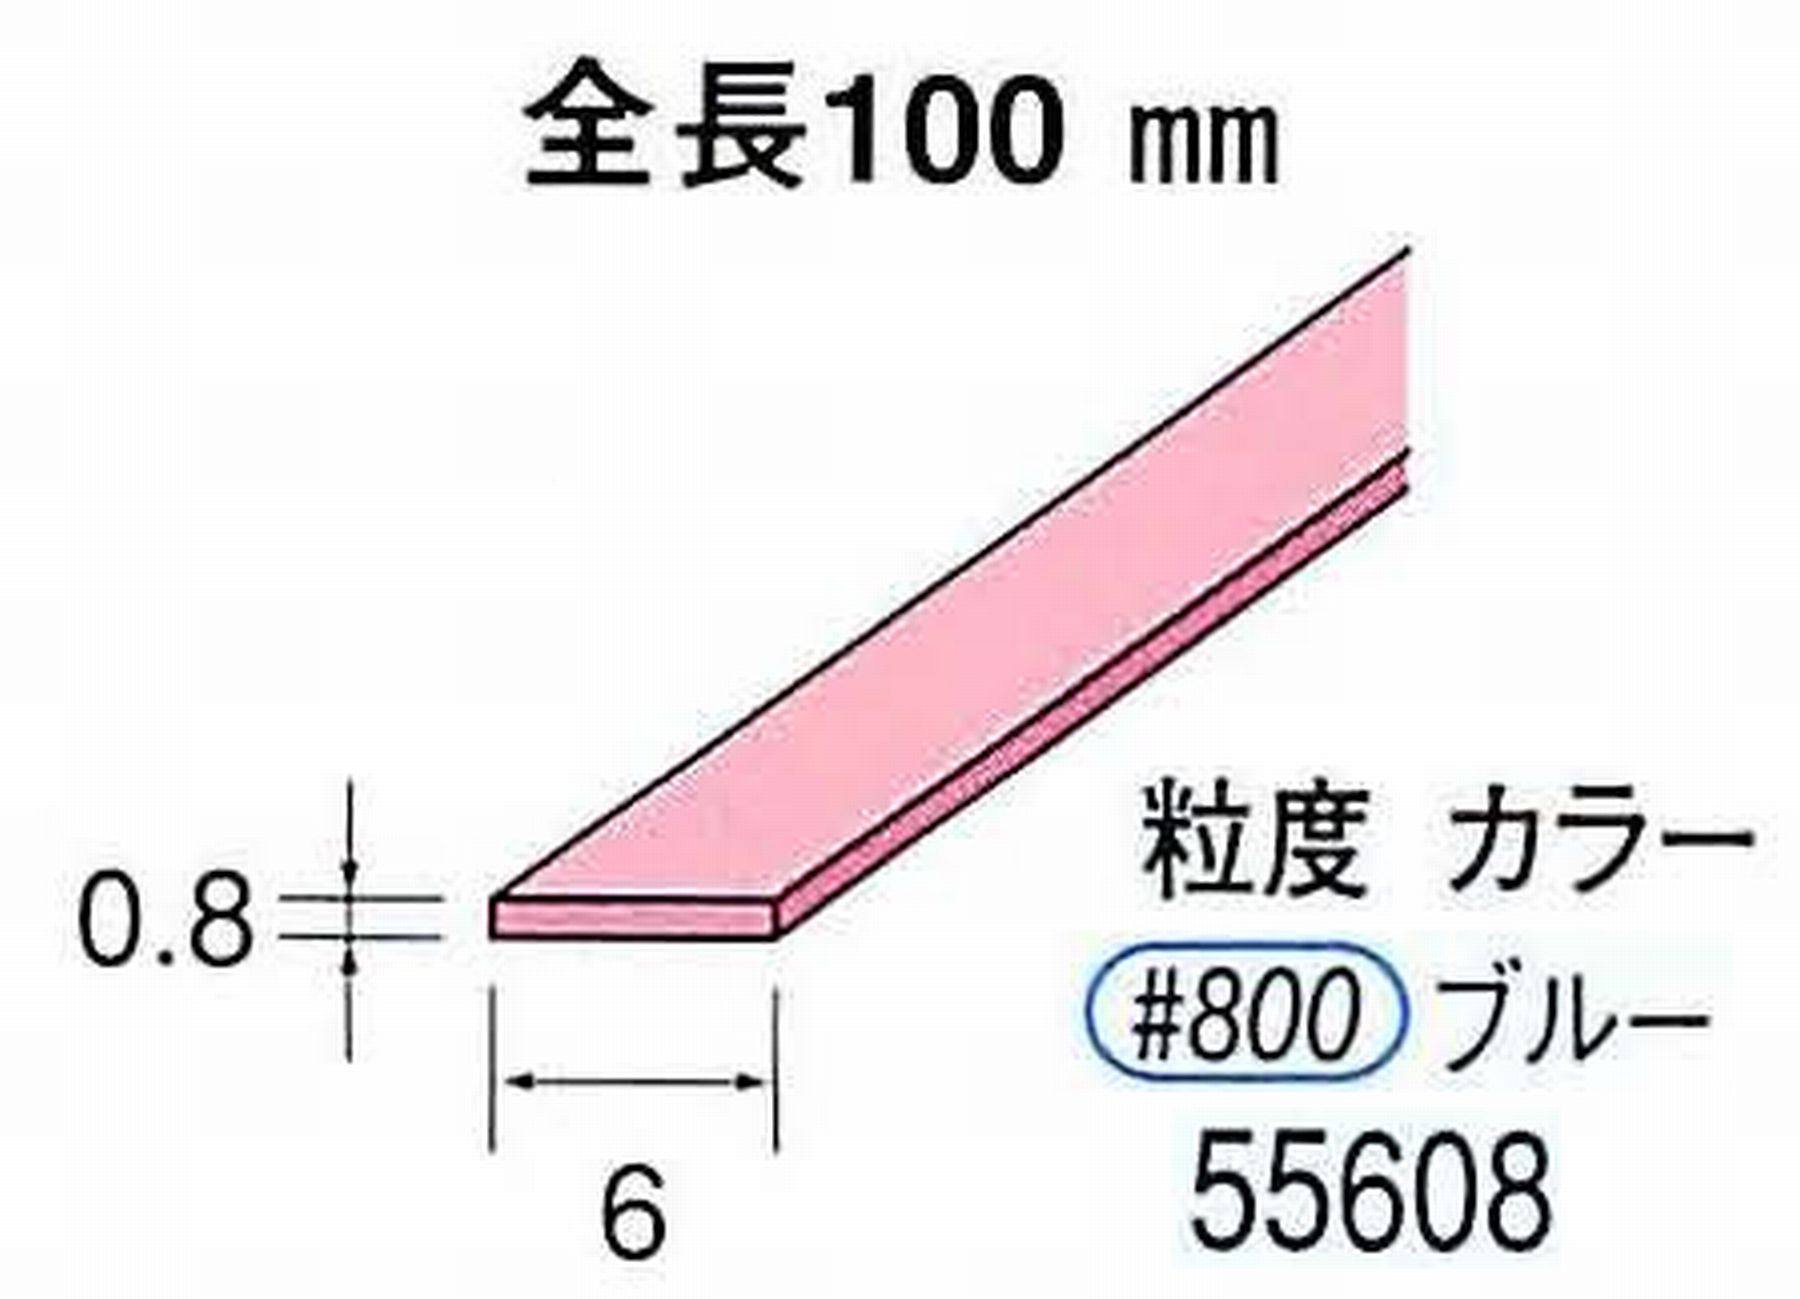 ナカニシ/NAKANISHI セラファイバー砥石 全長100mm ブルー 55608